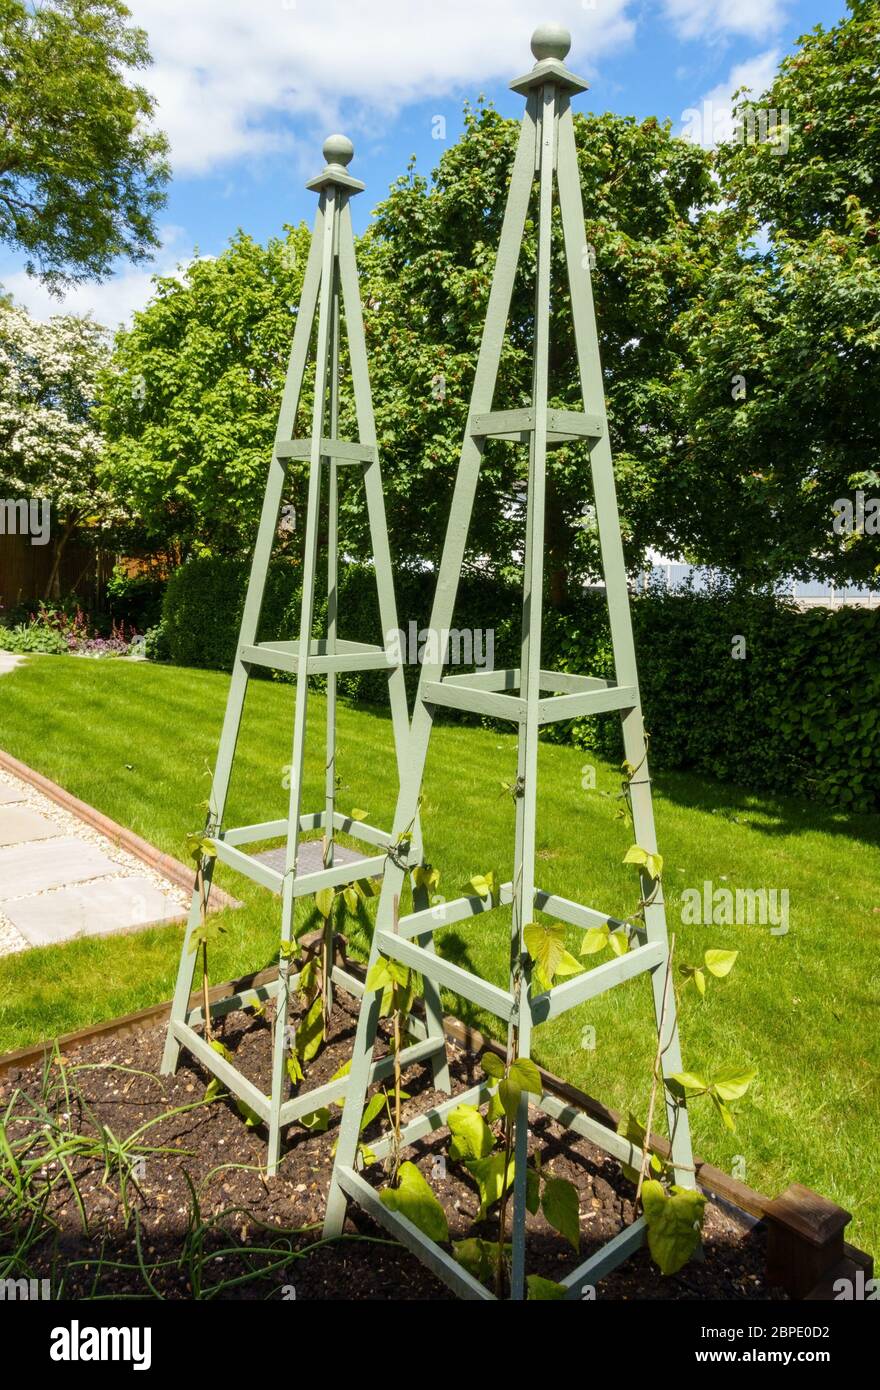 Les obélisques de jardin en bois utilisés comme poteaux de haricots pour la culture de haricots de coureur dans un mouvement vers l'autosuffisance pendant le confinement Covid-19, mai 2020, Angleterre, Royaume-Uni Banque D'Images